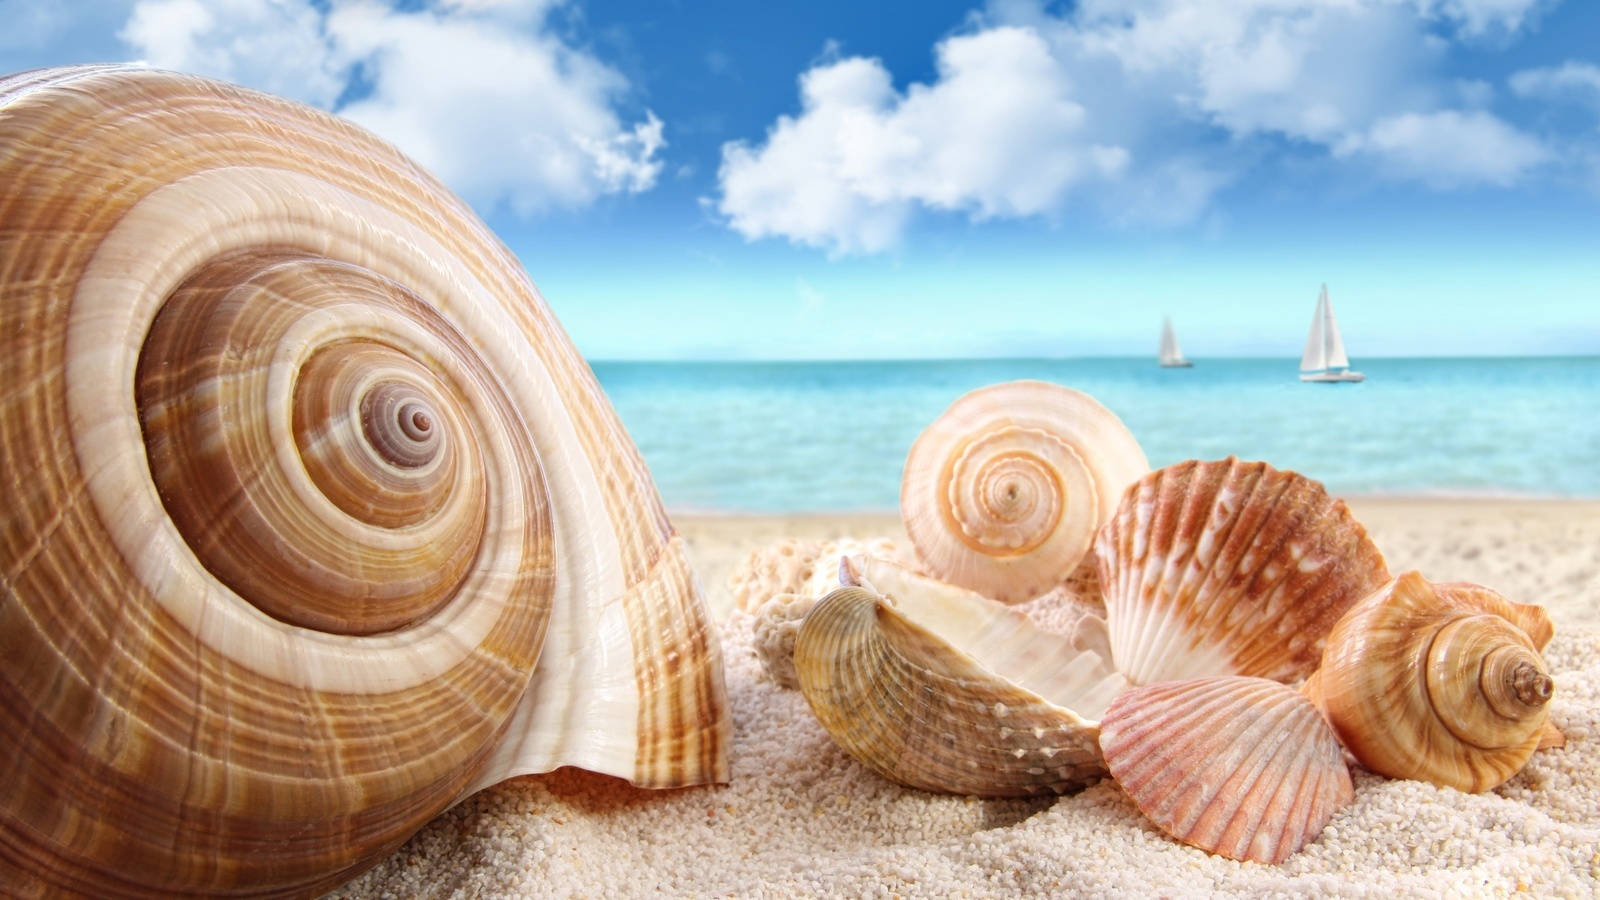 landscape, beach, snails